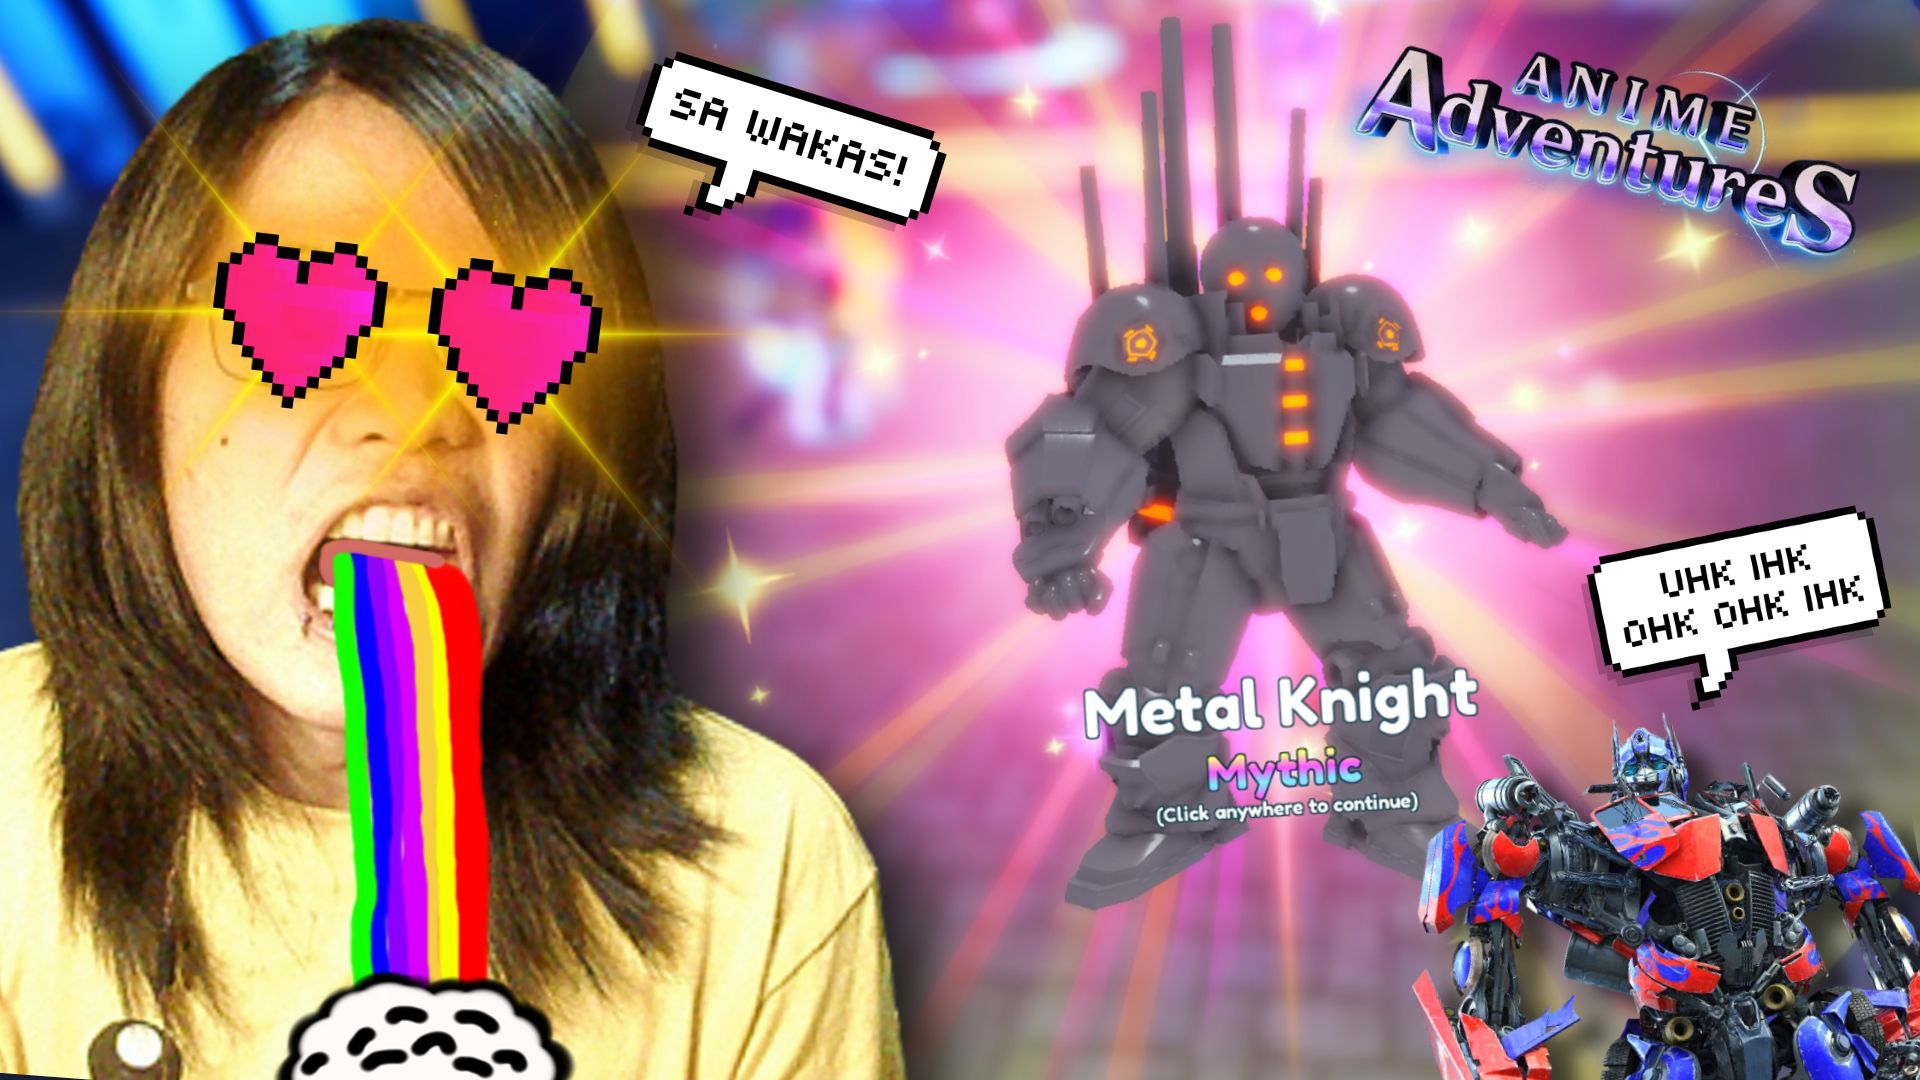 Anime adventures, Metal knight unique